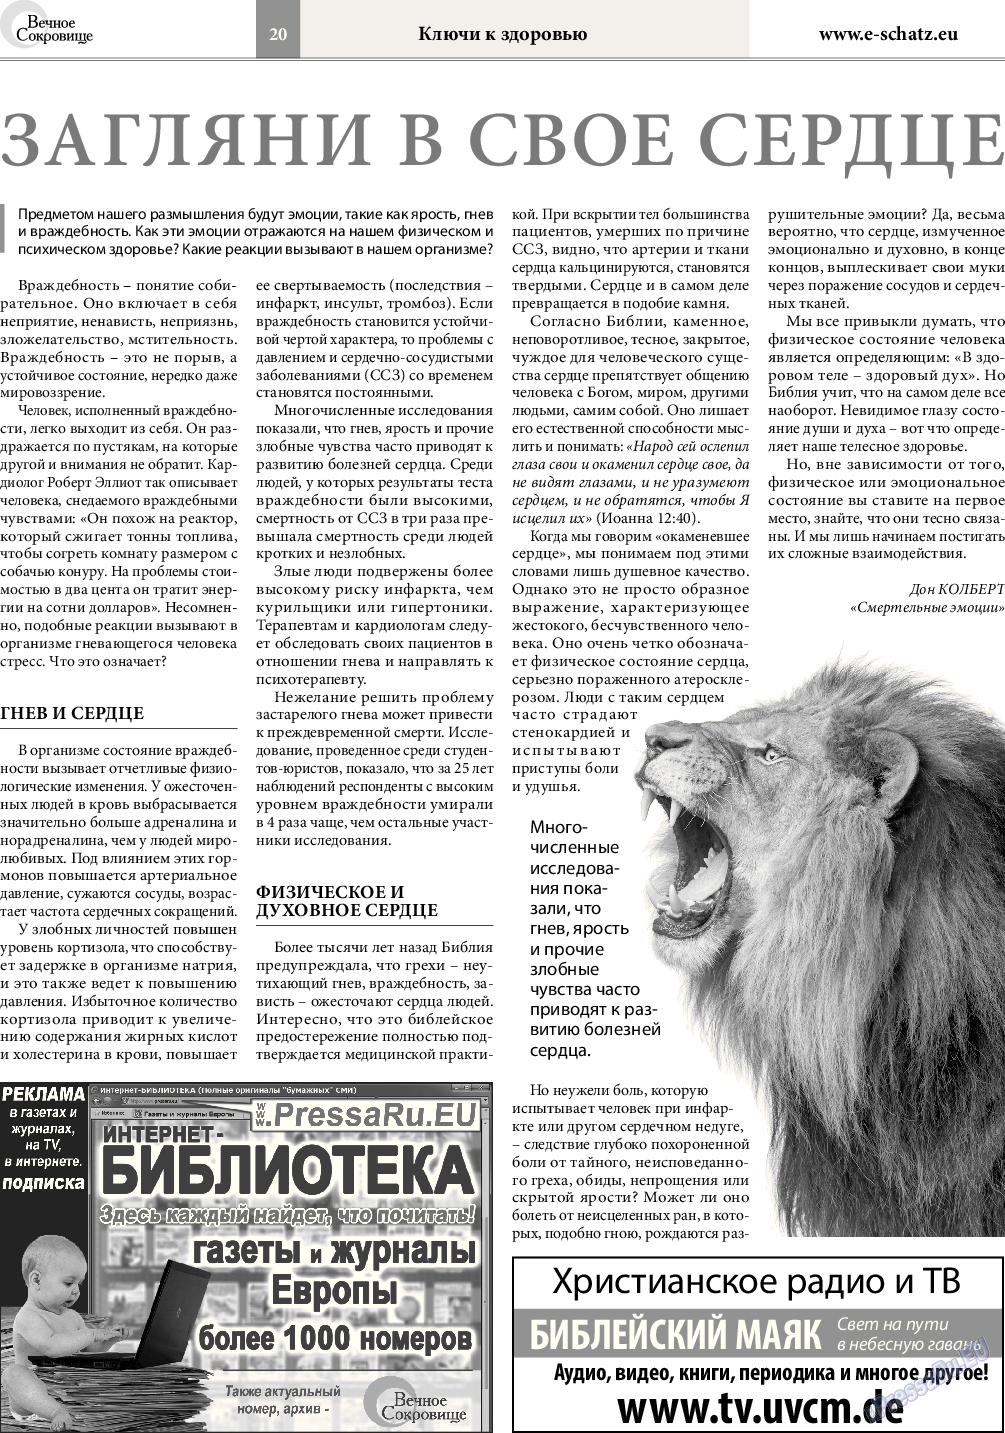 Вечное сокровище, газета. 2016 №3 стр.20